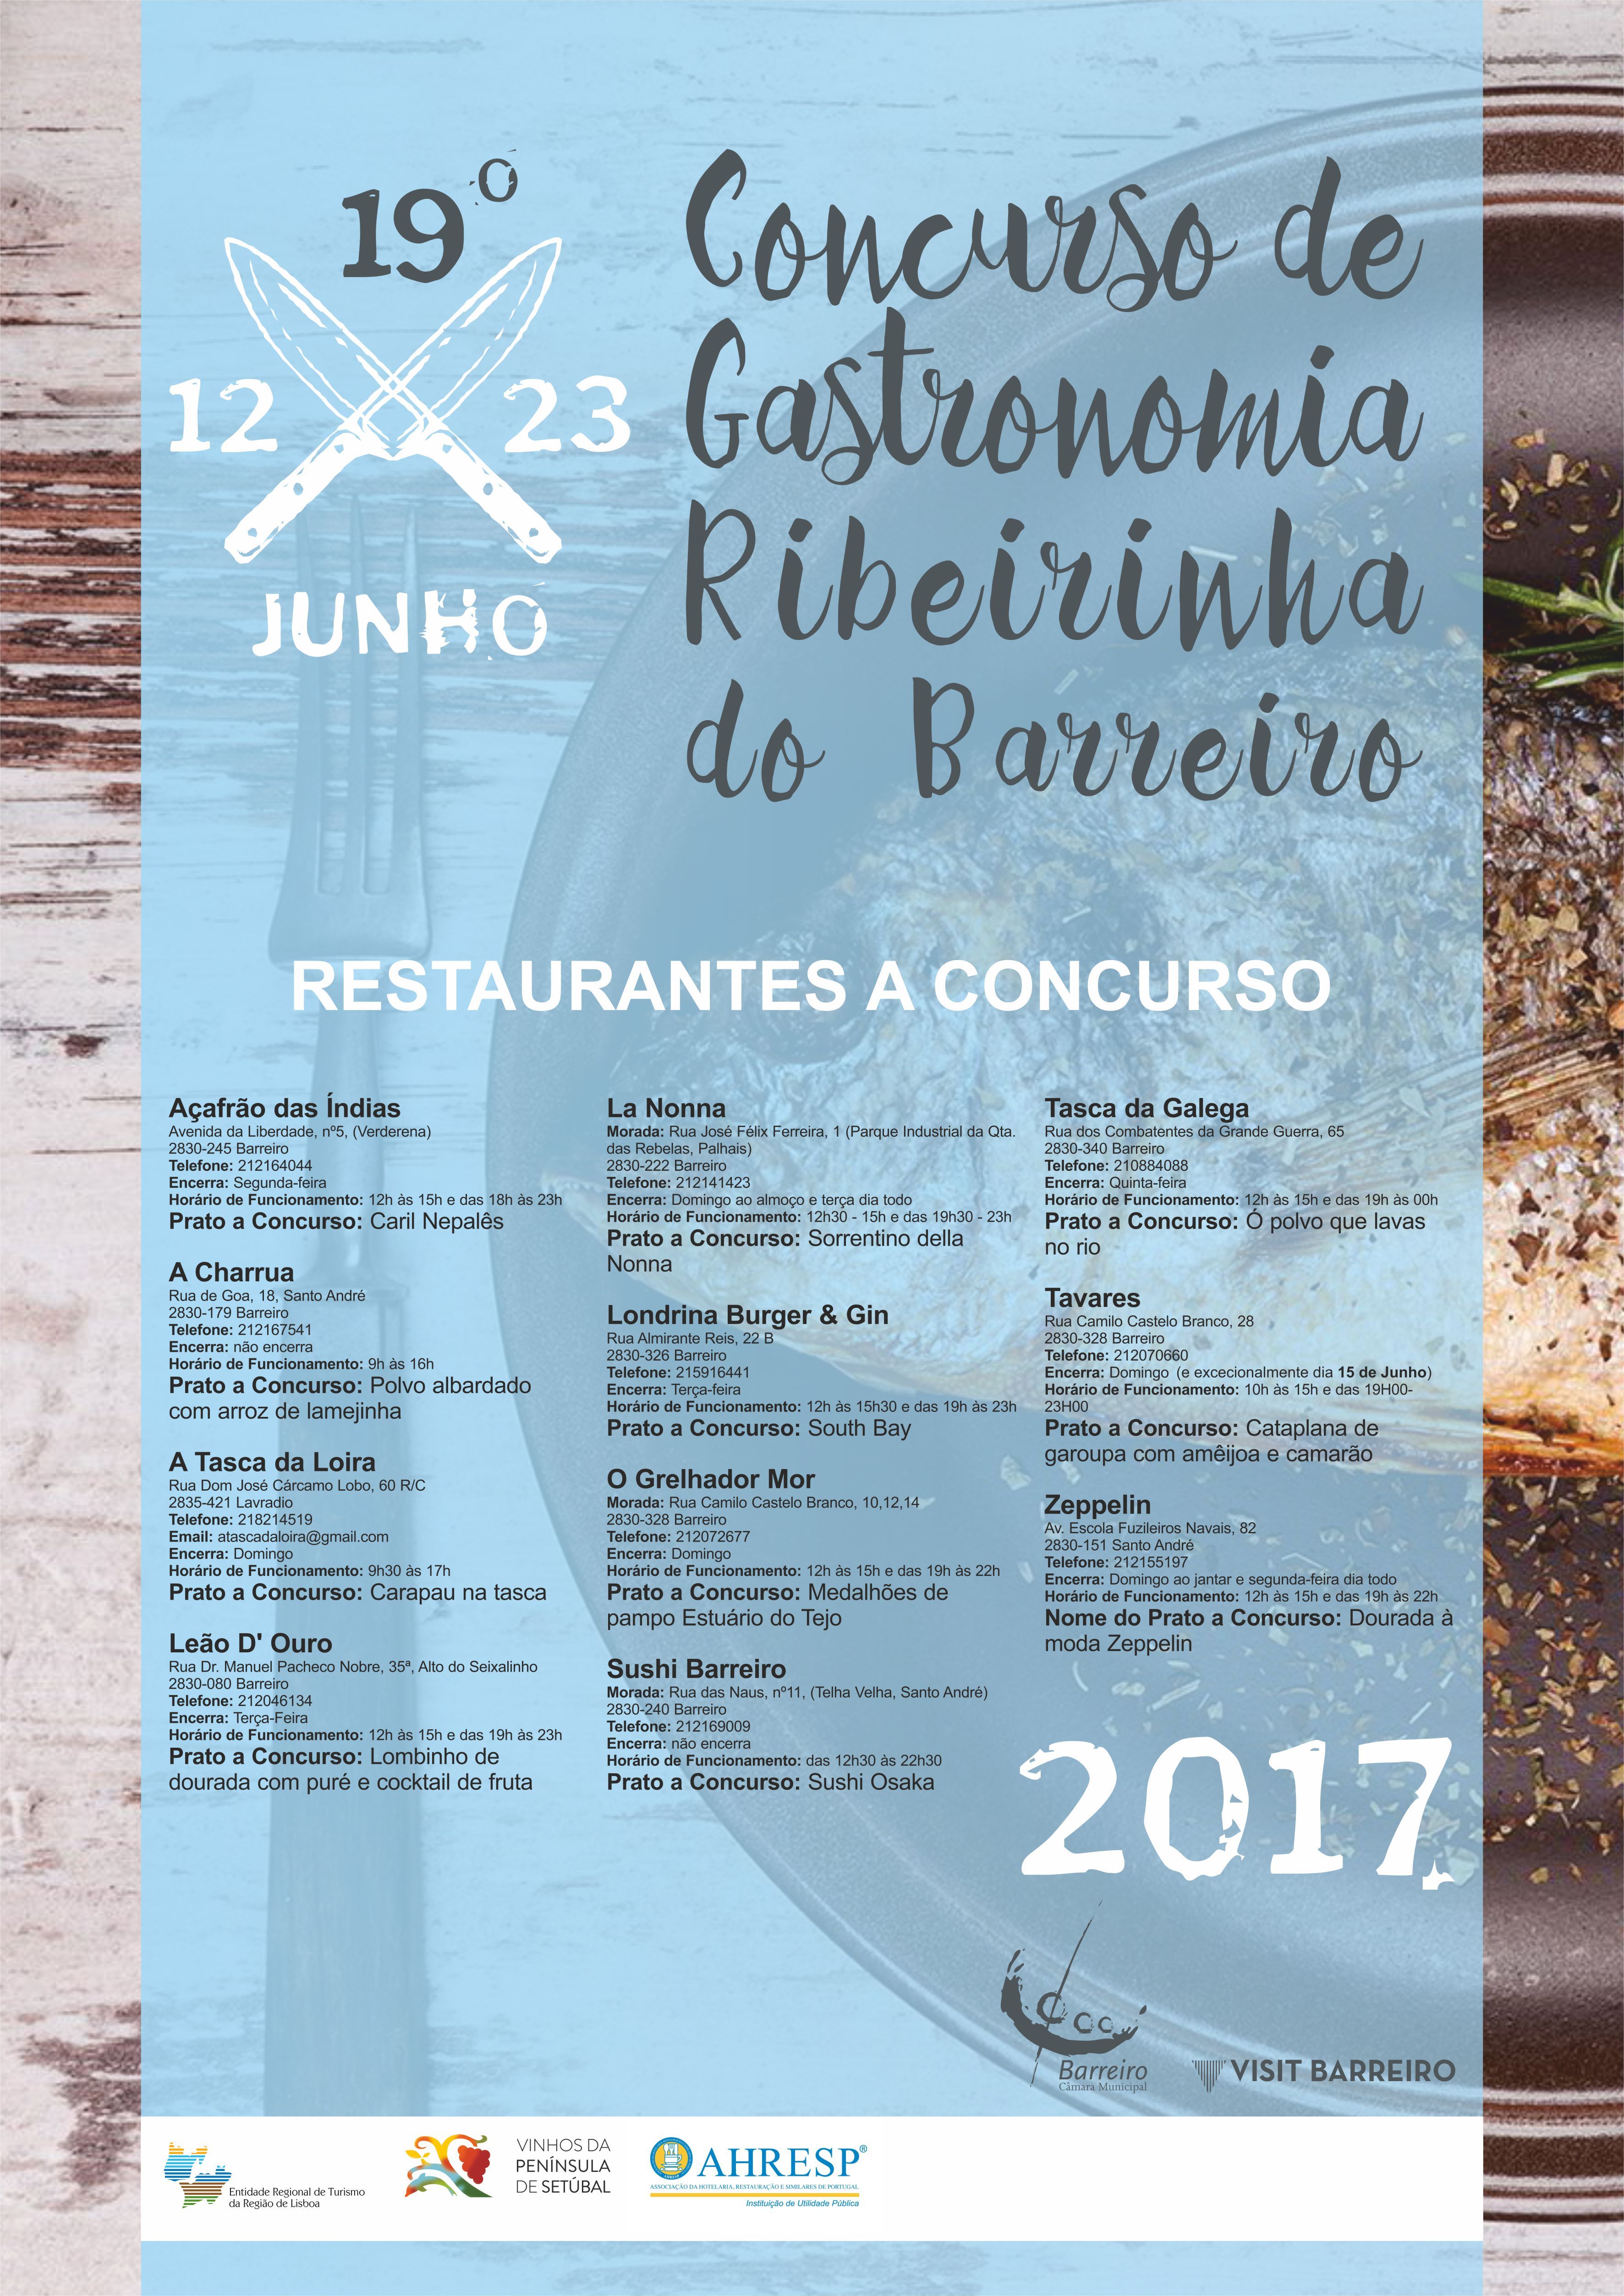 Entrega de prémios a 28 de junho | 19º Concurso de Gastronomia Ribeirinha